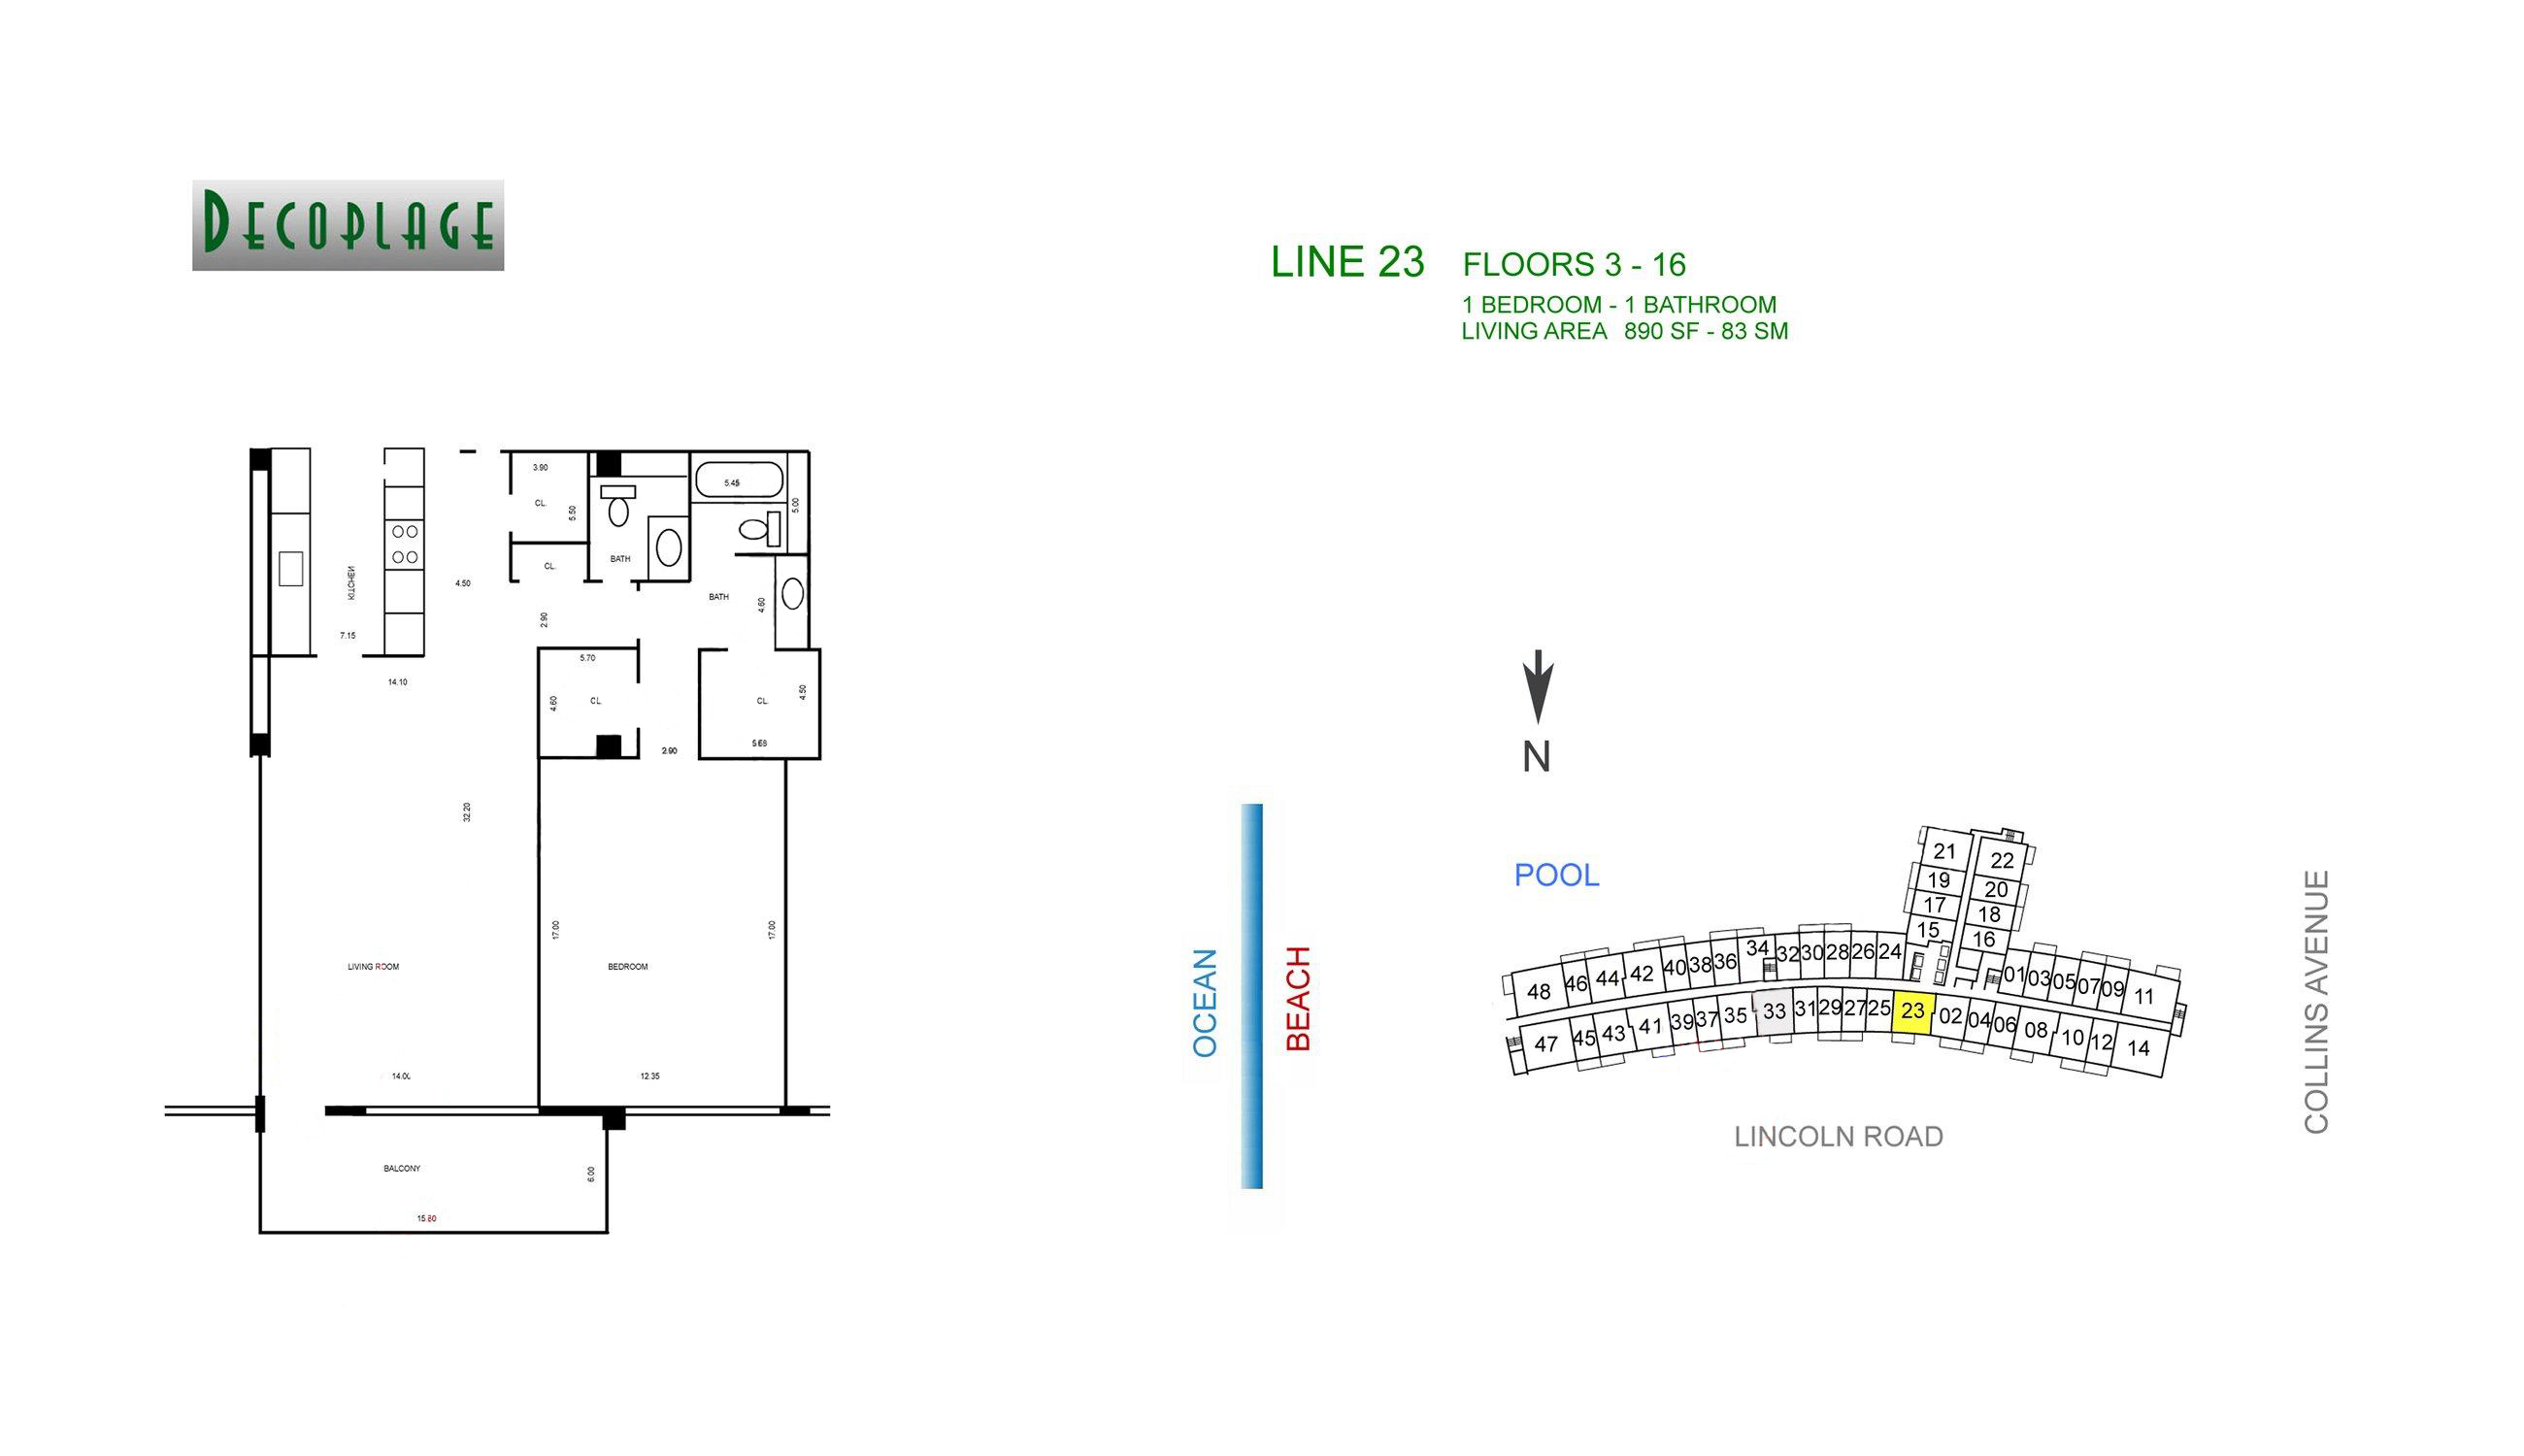 Decoplage Lines 23 Floors 3-16